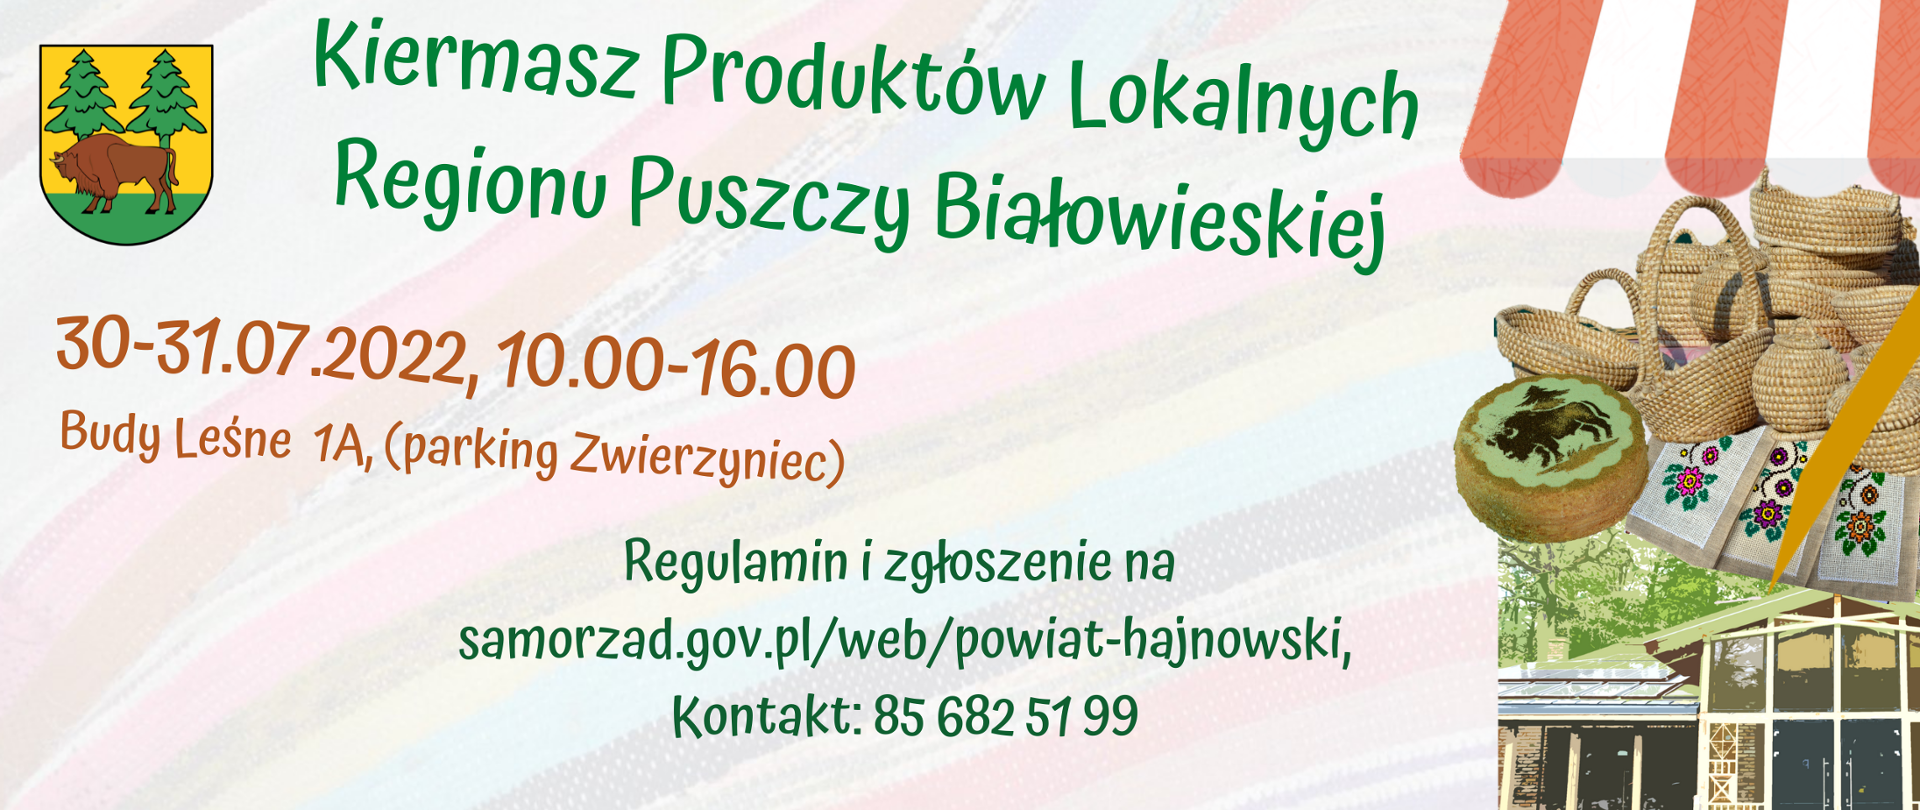 Kiermasz Produktów Lokalnych Regionu Puszczy Białowieskiej, 30-31.07.2022 Budy Leśne 1A 